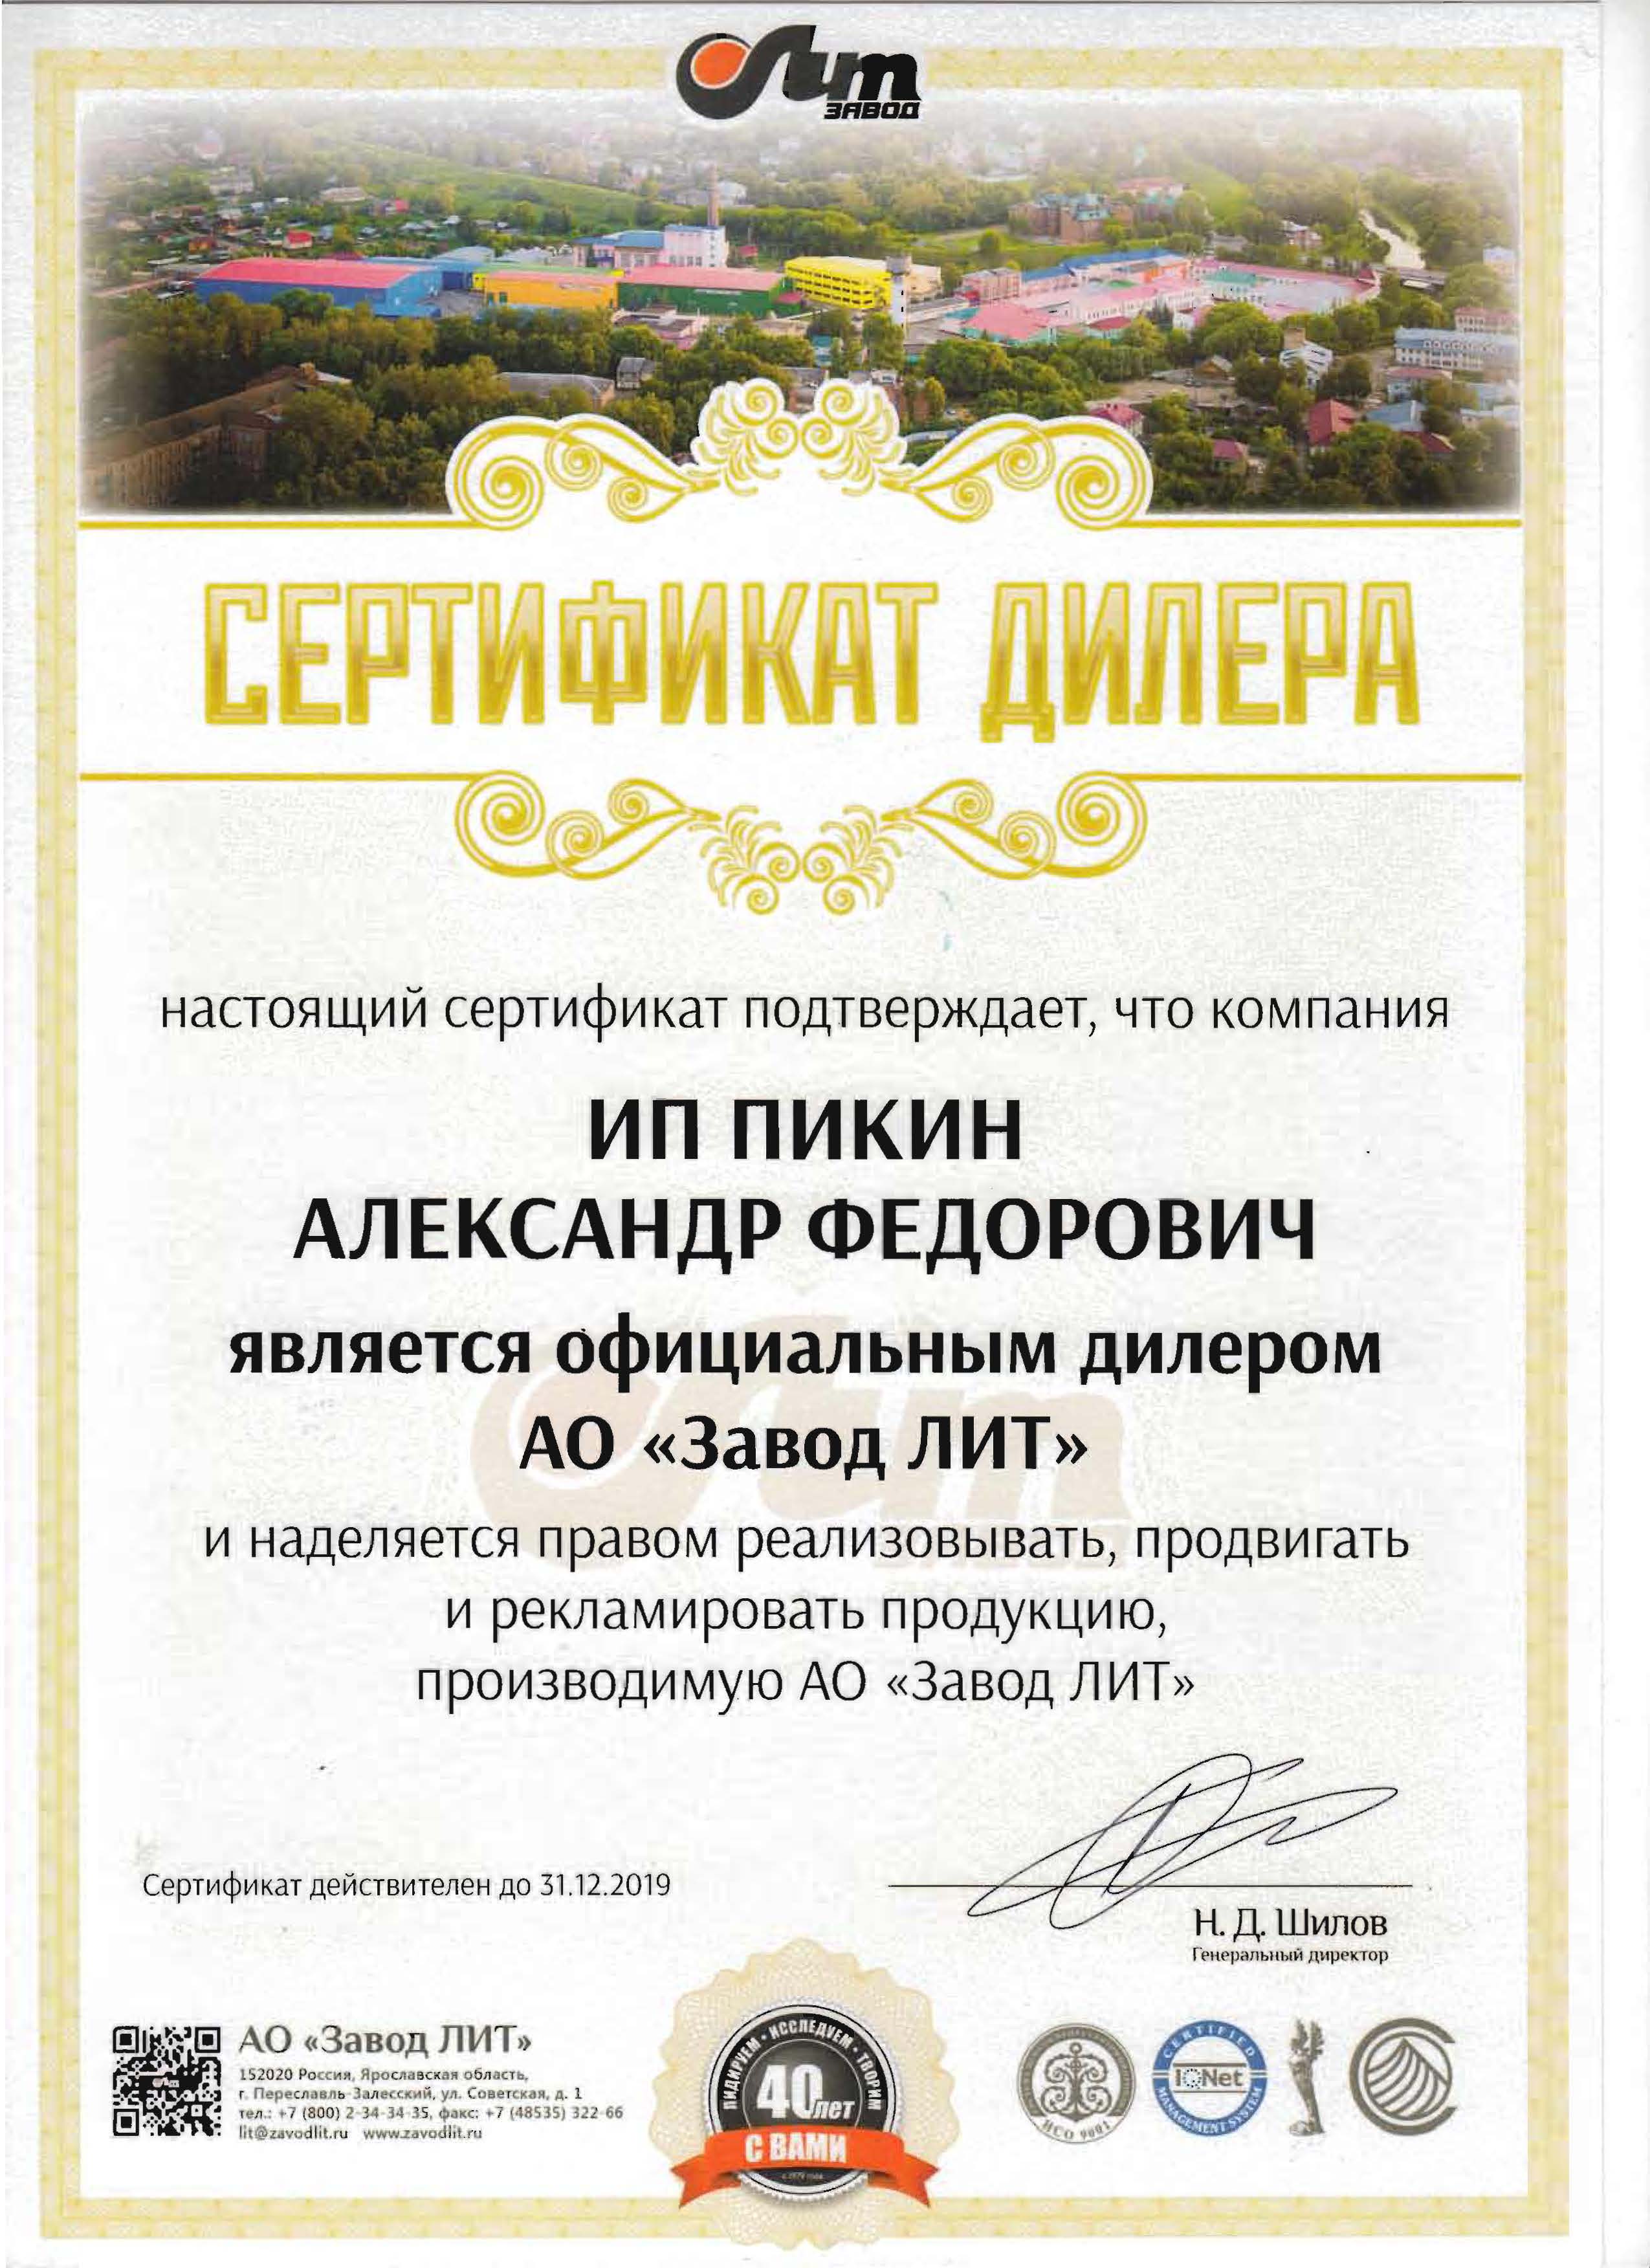 Сертификат официального дилера Завода ЛИТ на 2019 год